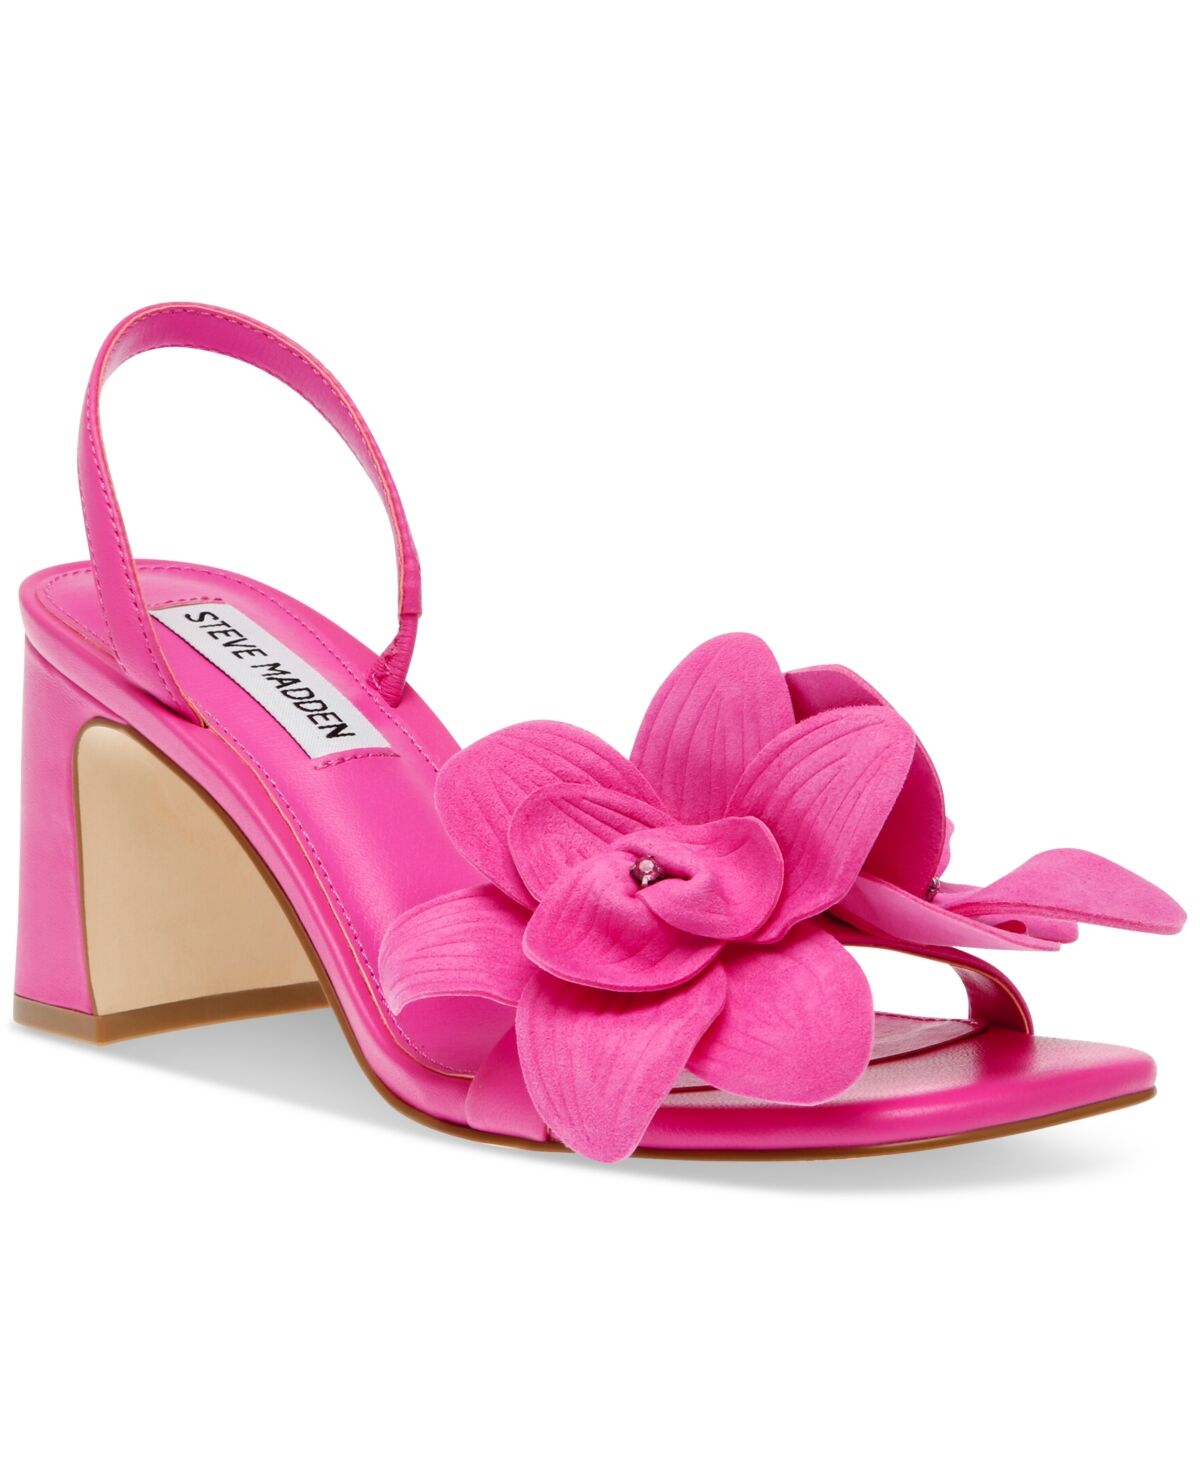 Steve Madden Women's Farrie Embellished Floral Dress Sandals - Pink Suede